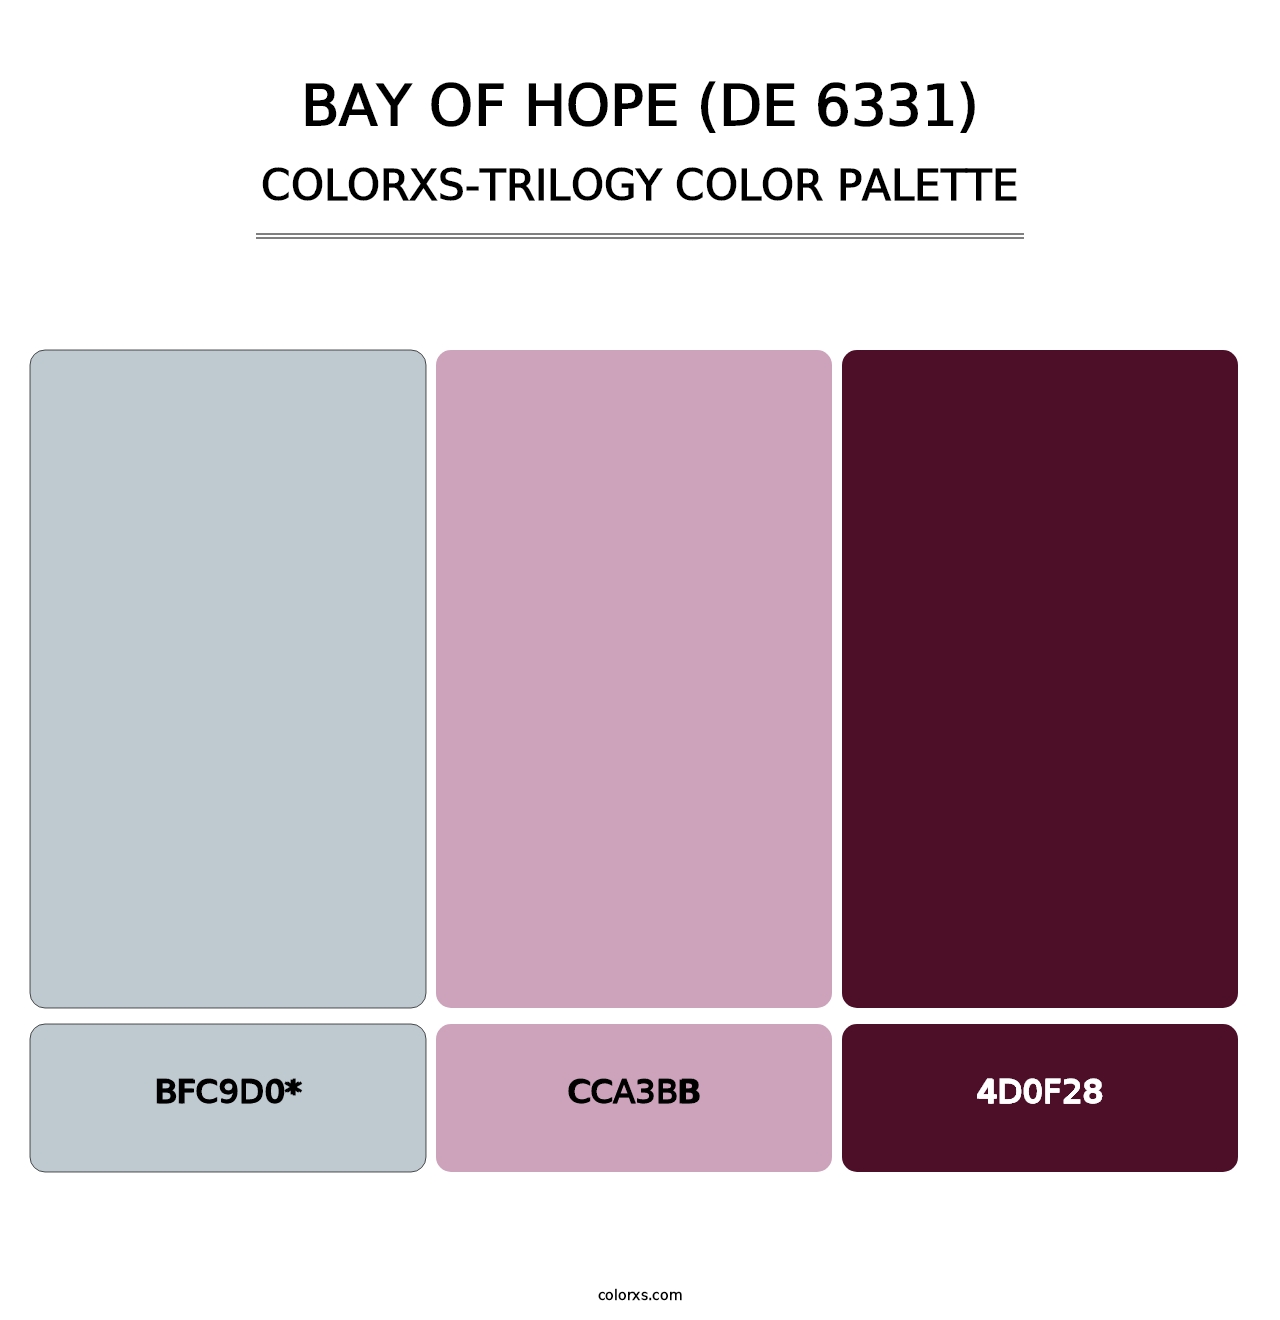 Bay of Hope (DE 6331) - Colorxs Trilogy Palette